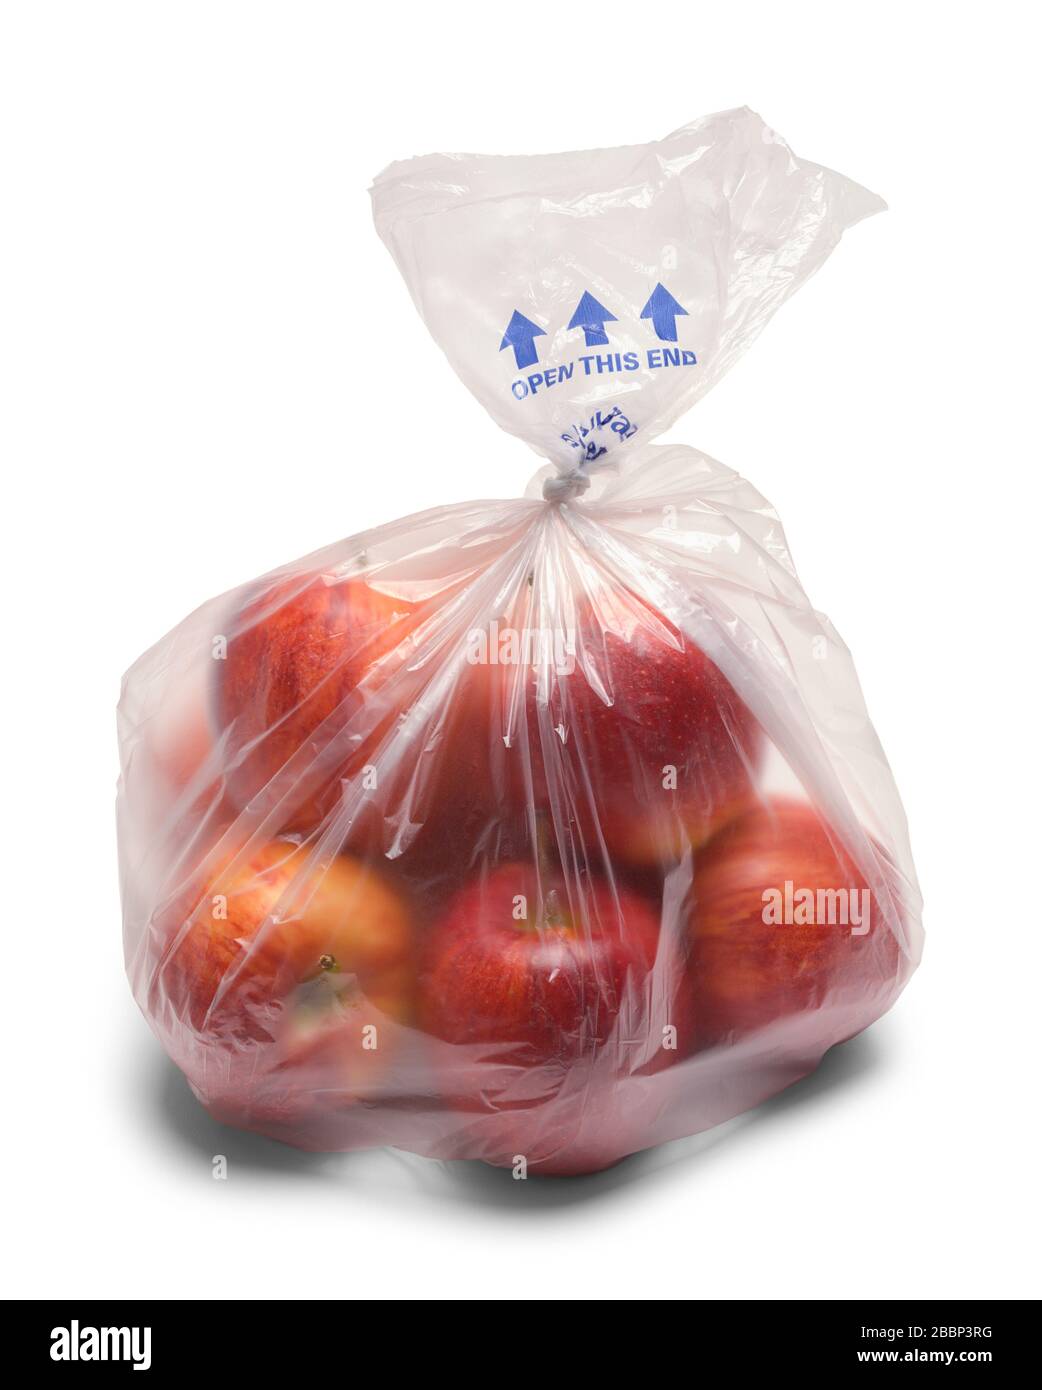 PC Organics Gala Apples 3Lb Bag  3 lb bag  No Frills Online